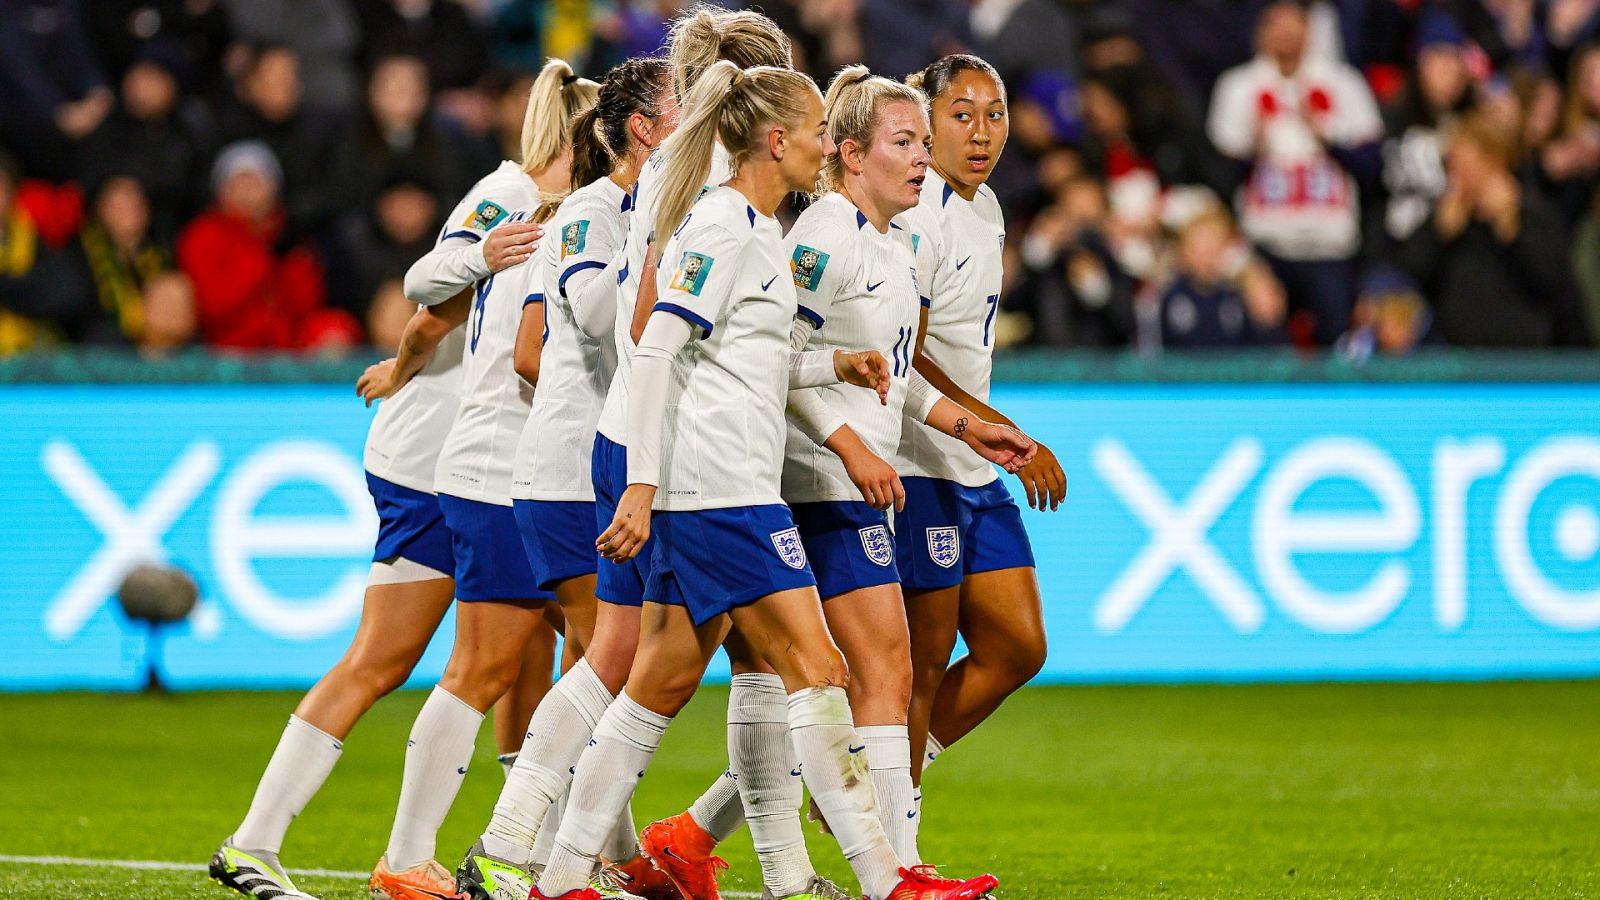 La selección inglesa de fútbol consiguió cambiar sus pantalones de blanco a azul para la Copa Mundial 2023